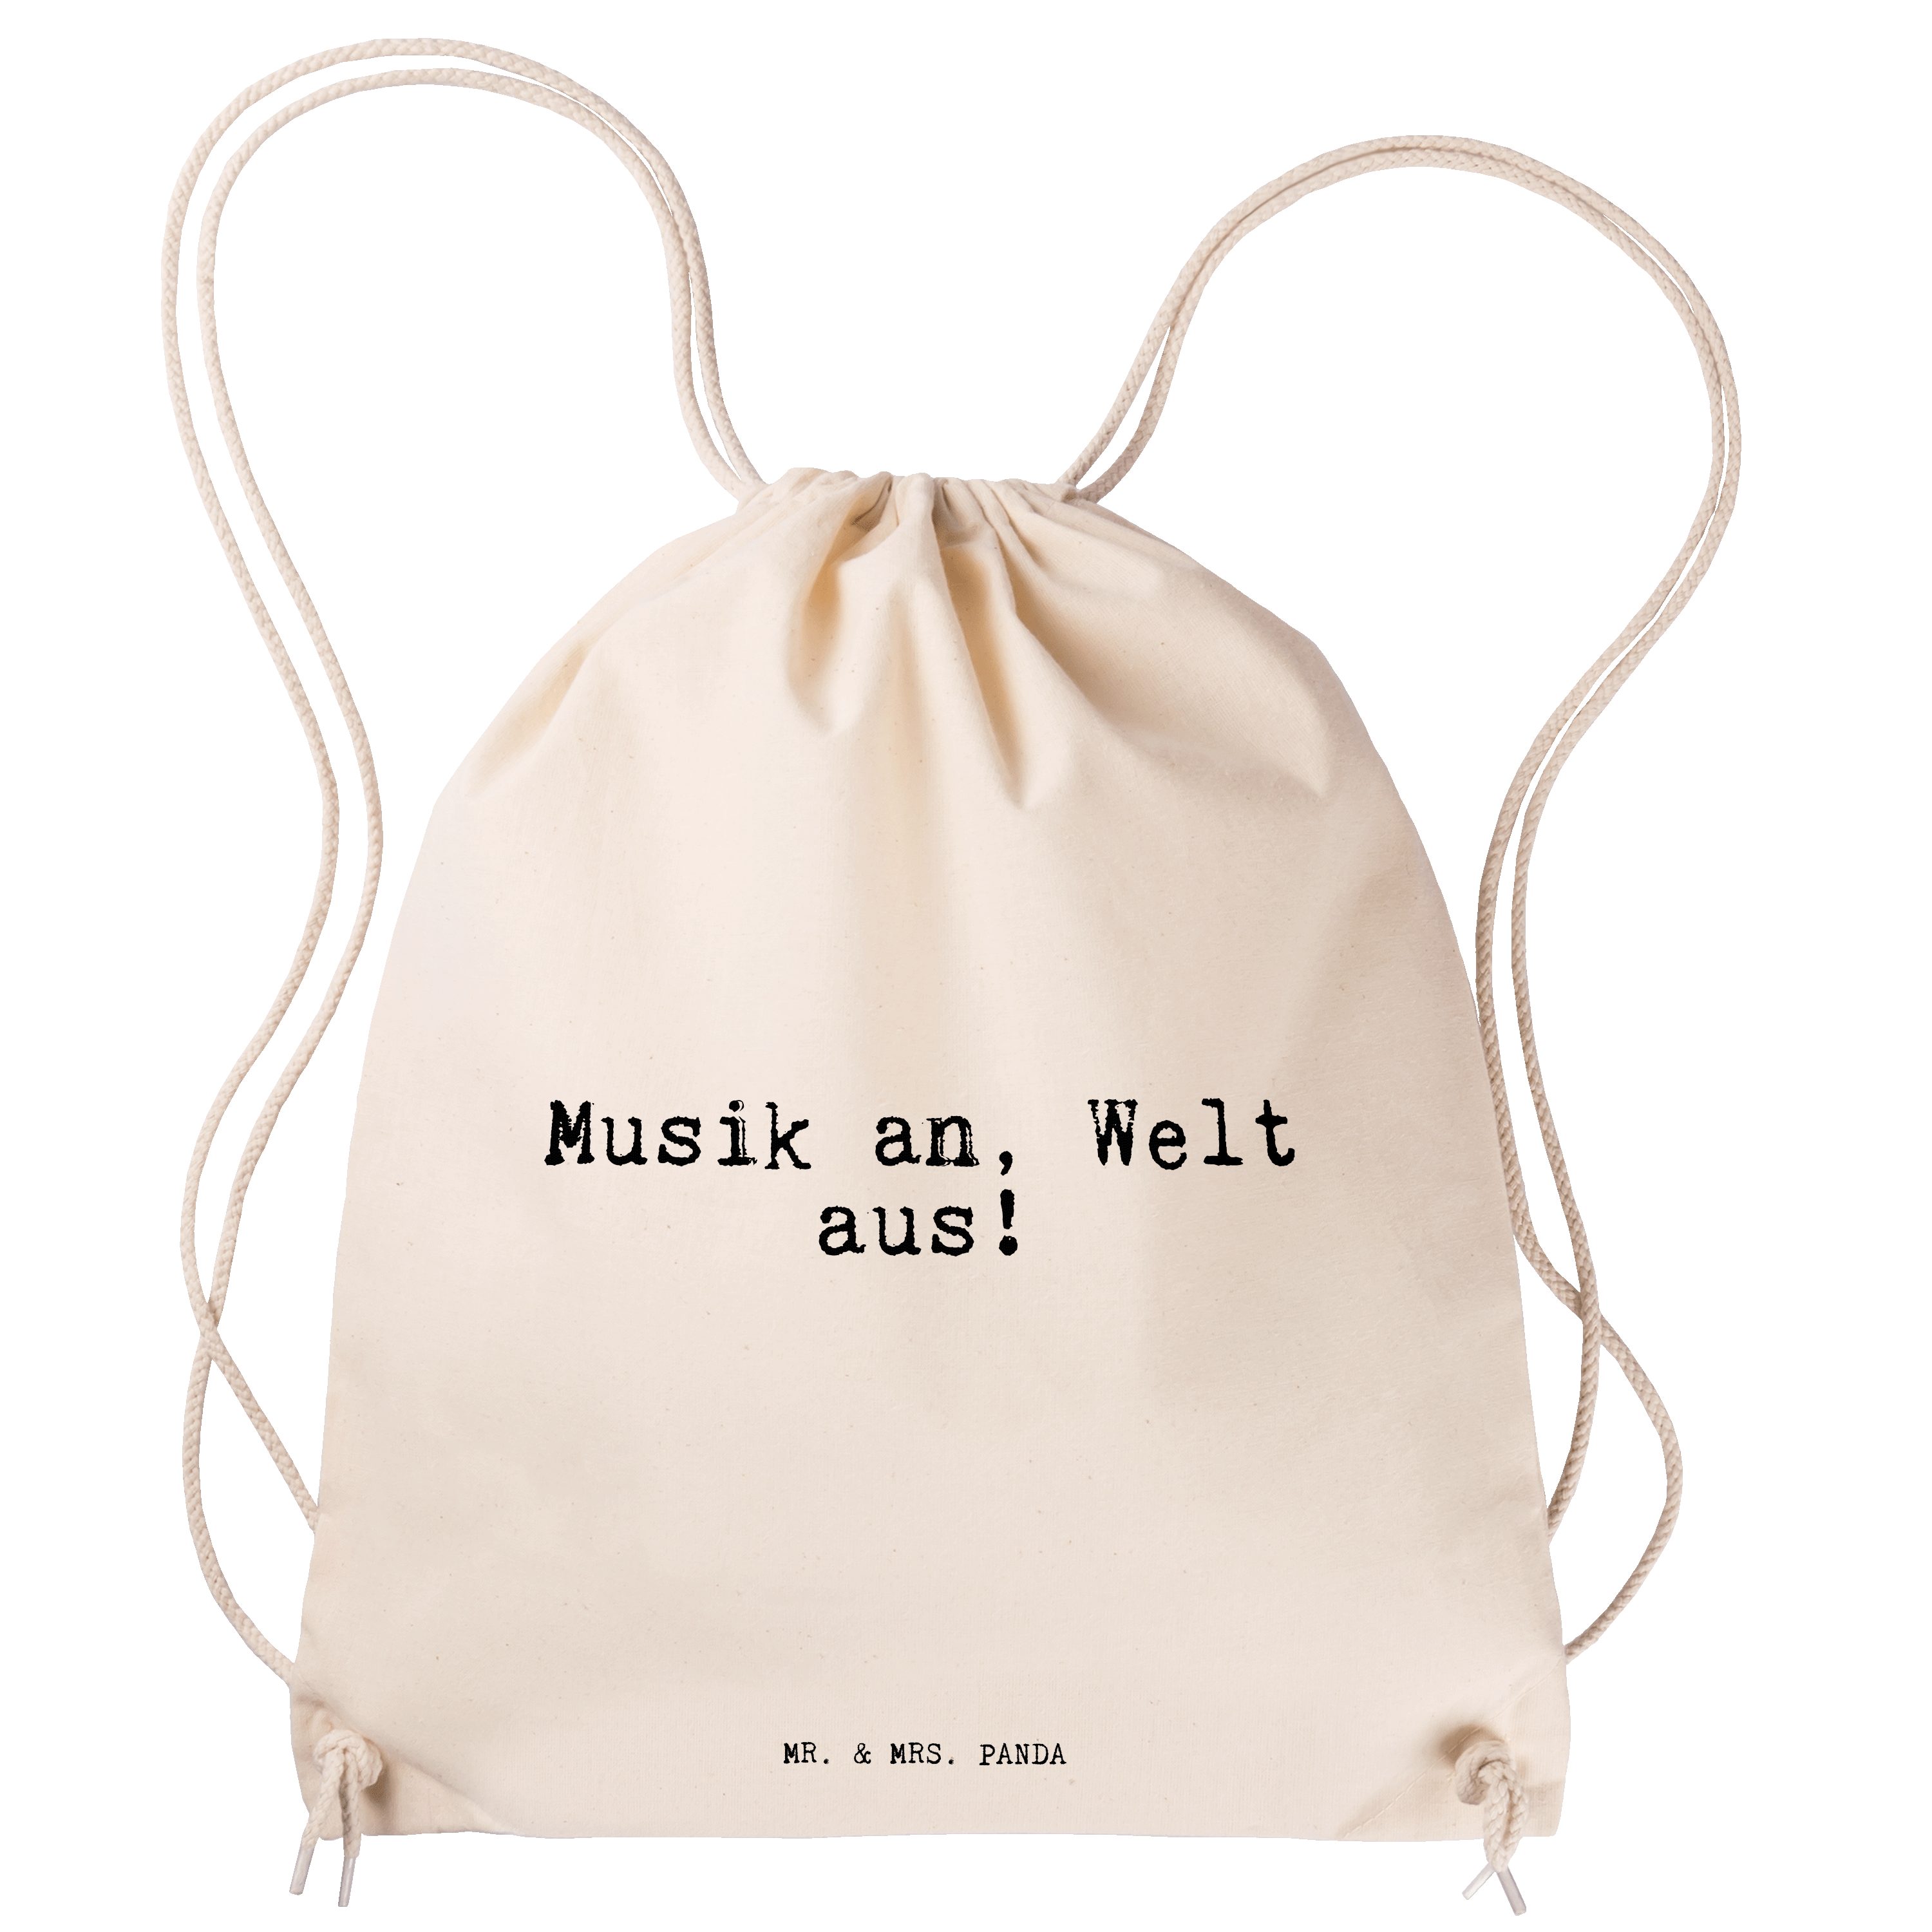 Mr. & Mrs. Panda an, - Musik Welt (1-tlg) Geschenk, aus!... Transparent Sporttasche Hören, - Sporttasche